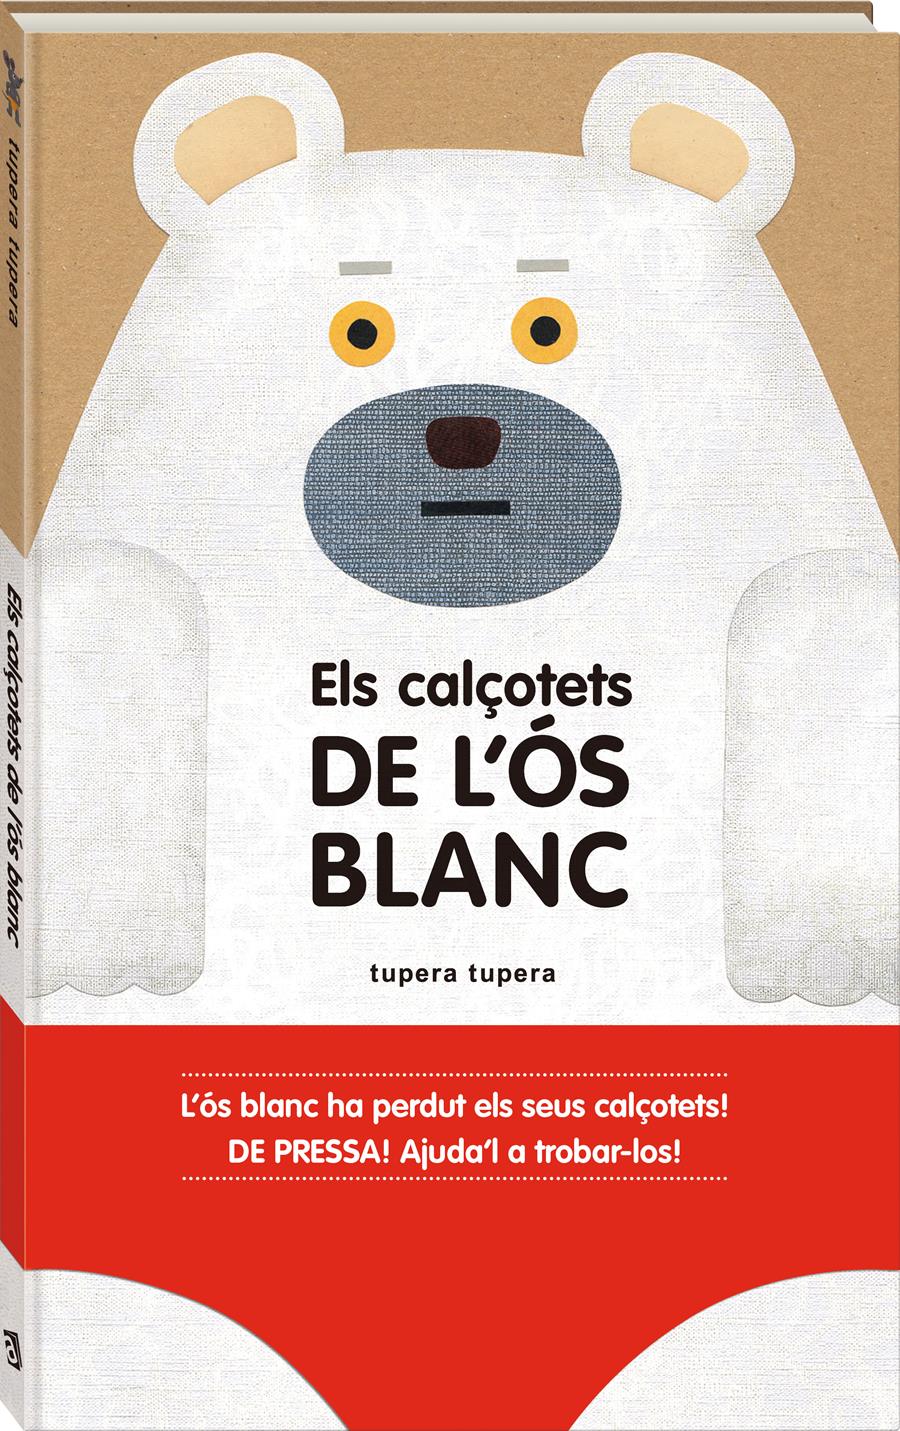 Els calçotets de l'ós blanc | 978-84-16394-15-9 | Tupera Tupera | Álbumes ilustrados, libros informativos y objetos literarios.